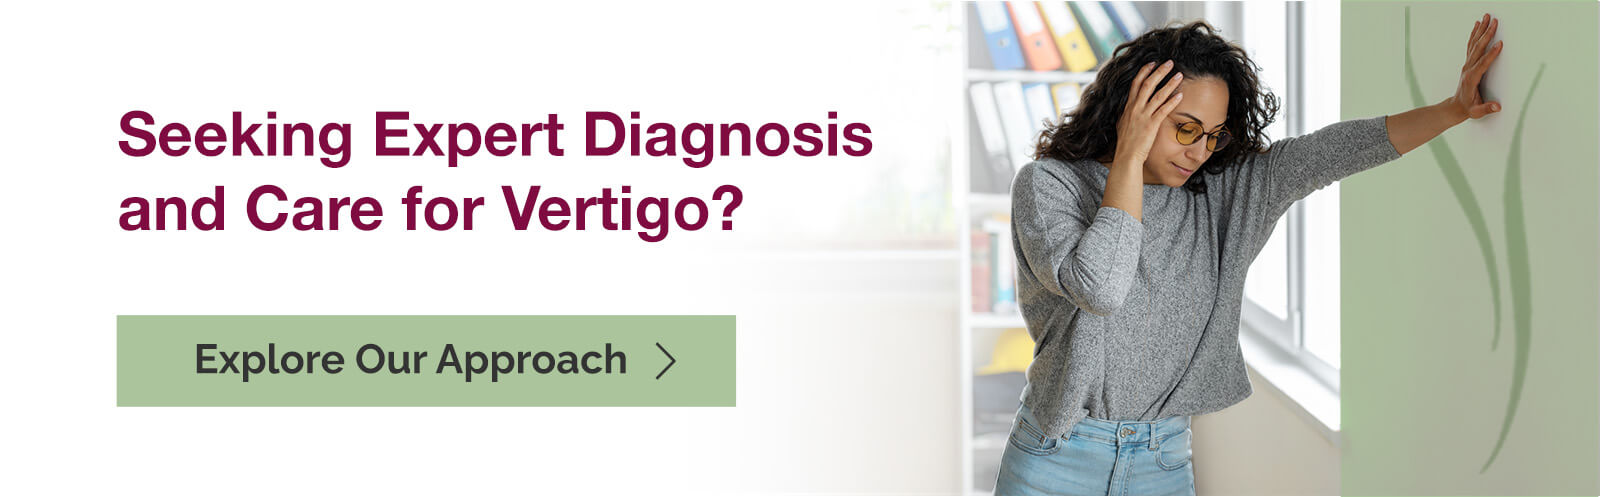 Seeking Expert Diagnosis and Care for Vertigo? Explore Our Approach